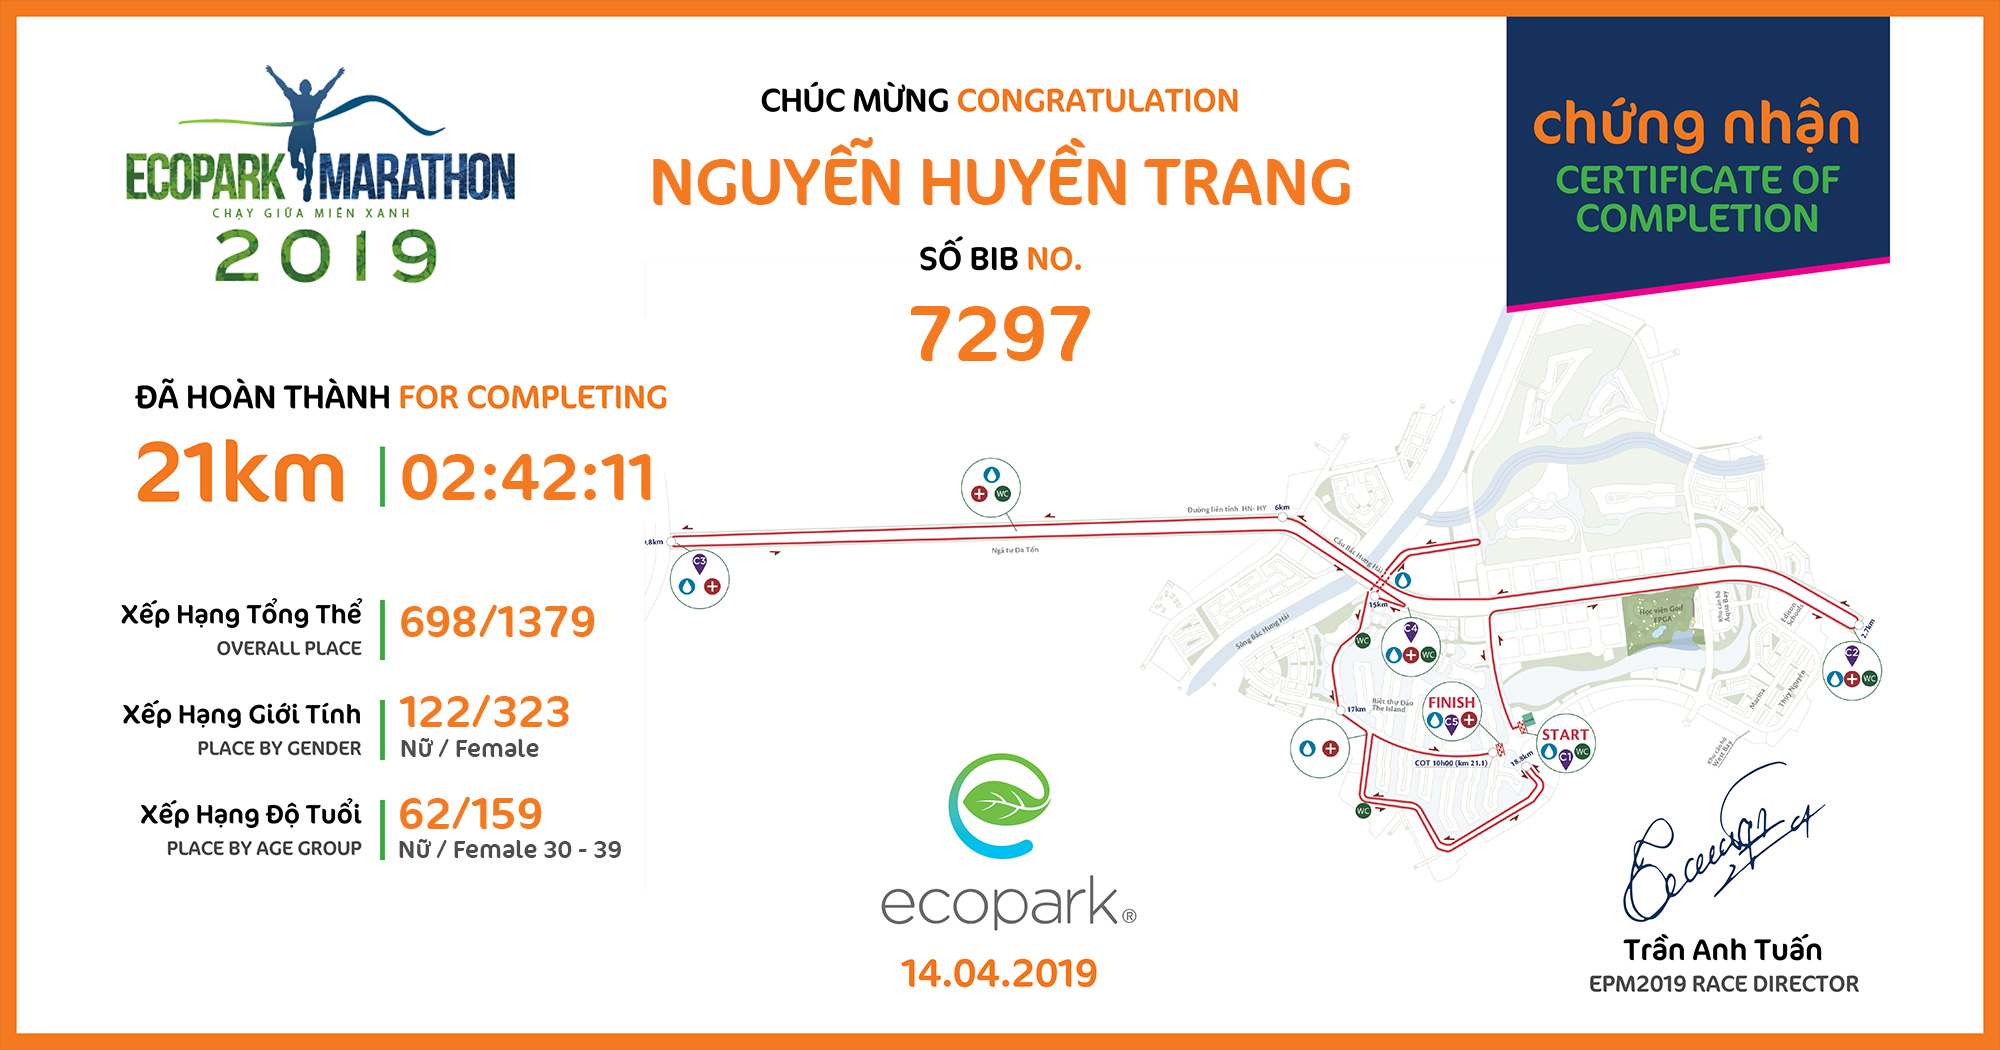 7297 - Nguyễn Huyền Trang